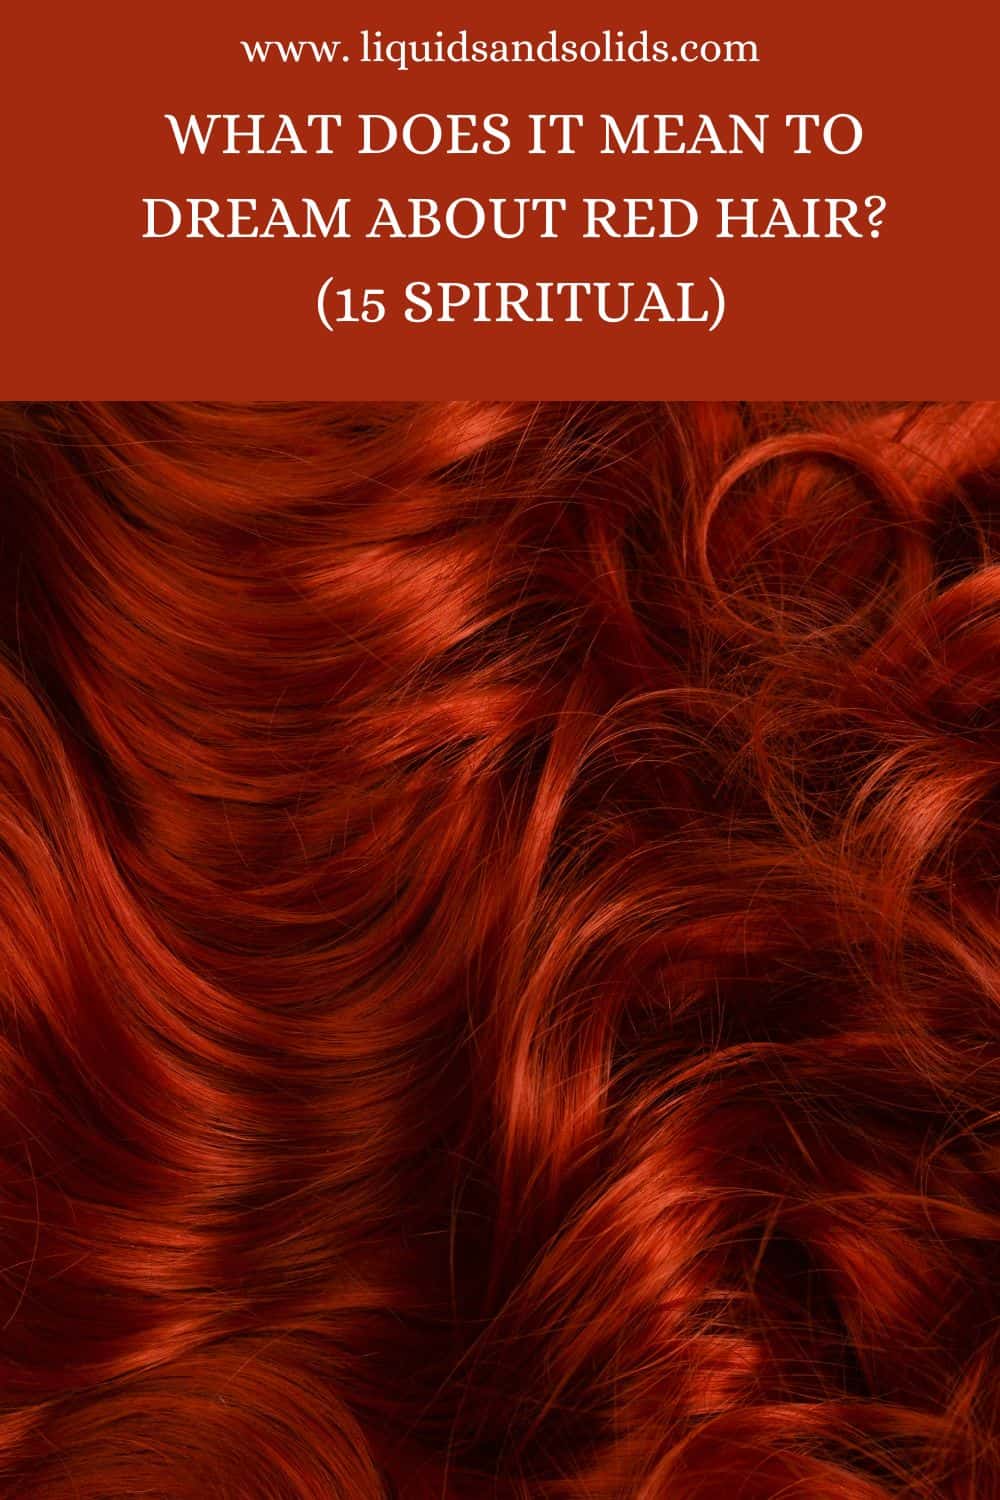  Rêve de cheveux roux (15 significations spirituelles)